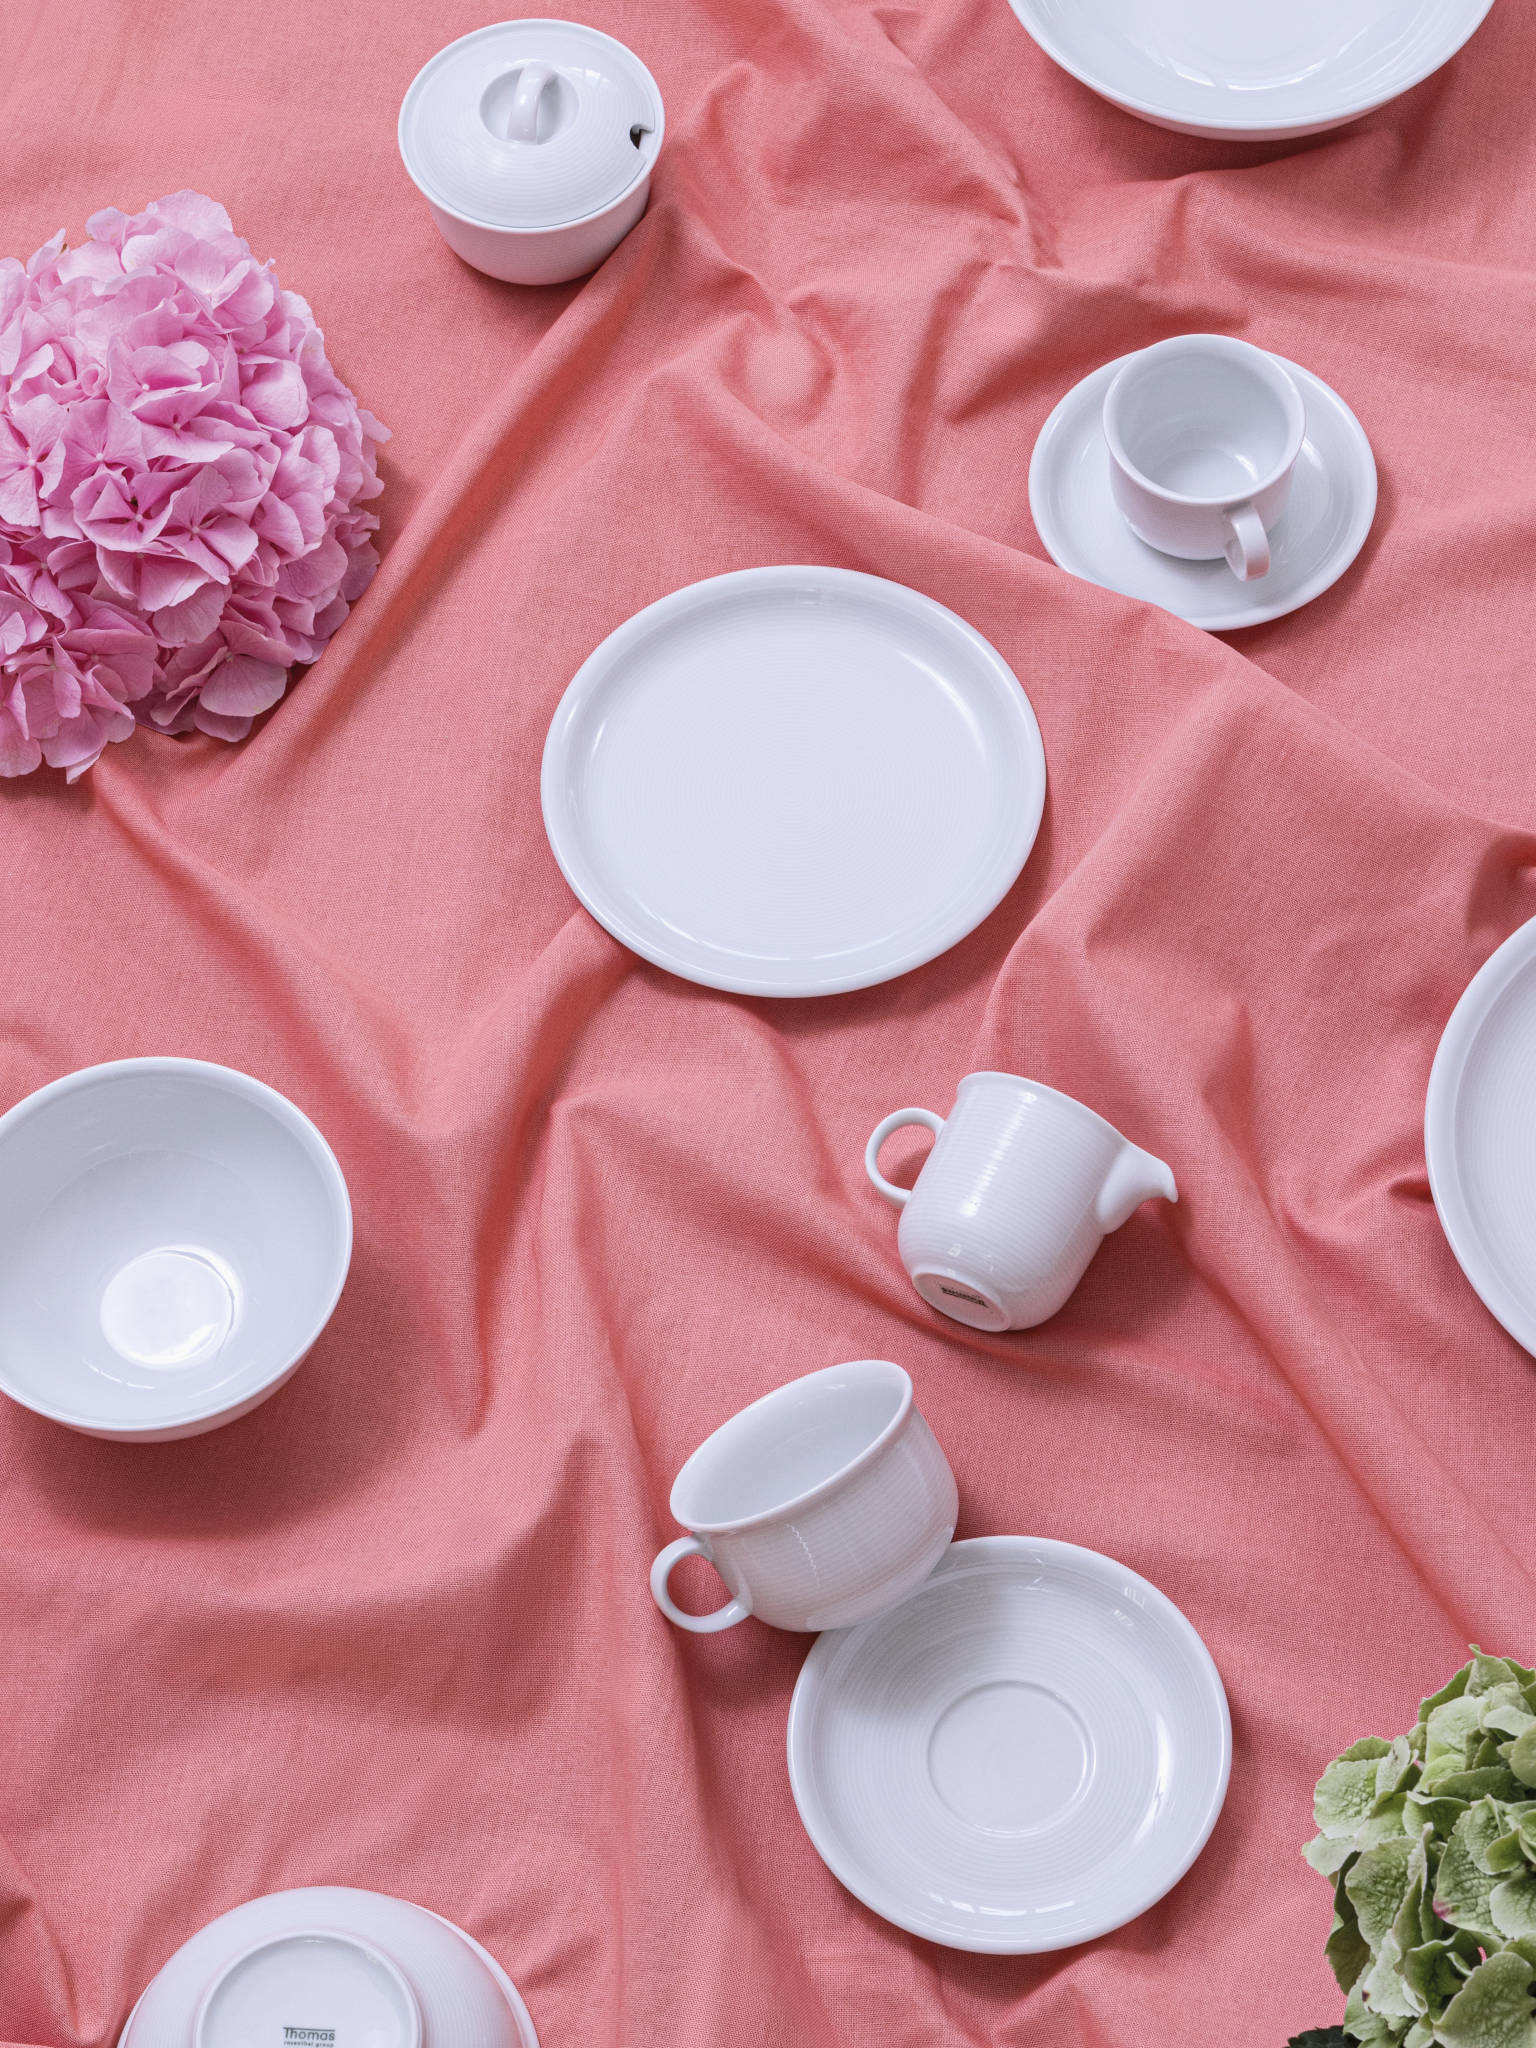 Thomas Trend Weiß Porzellanartikel durcheinander liegend auf rosa Tischdecke